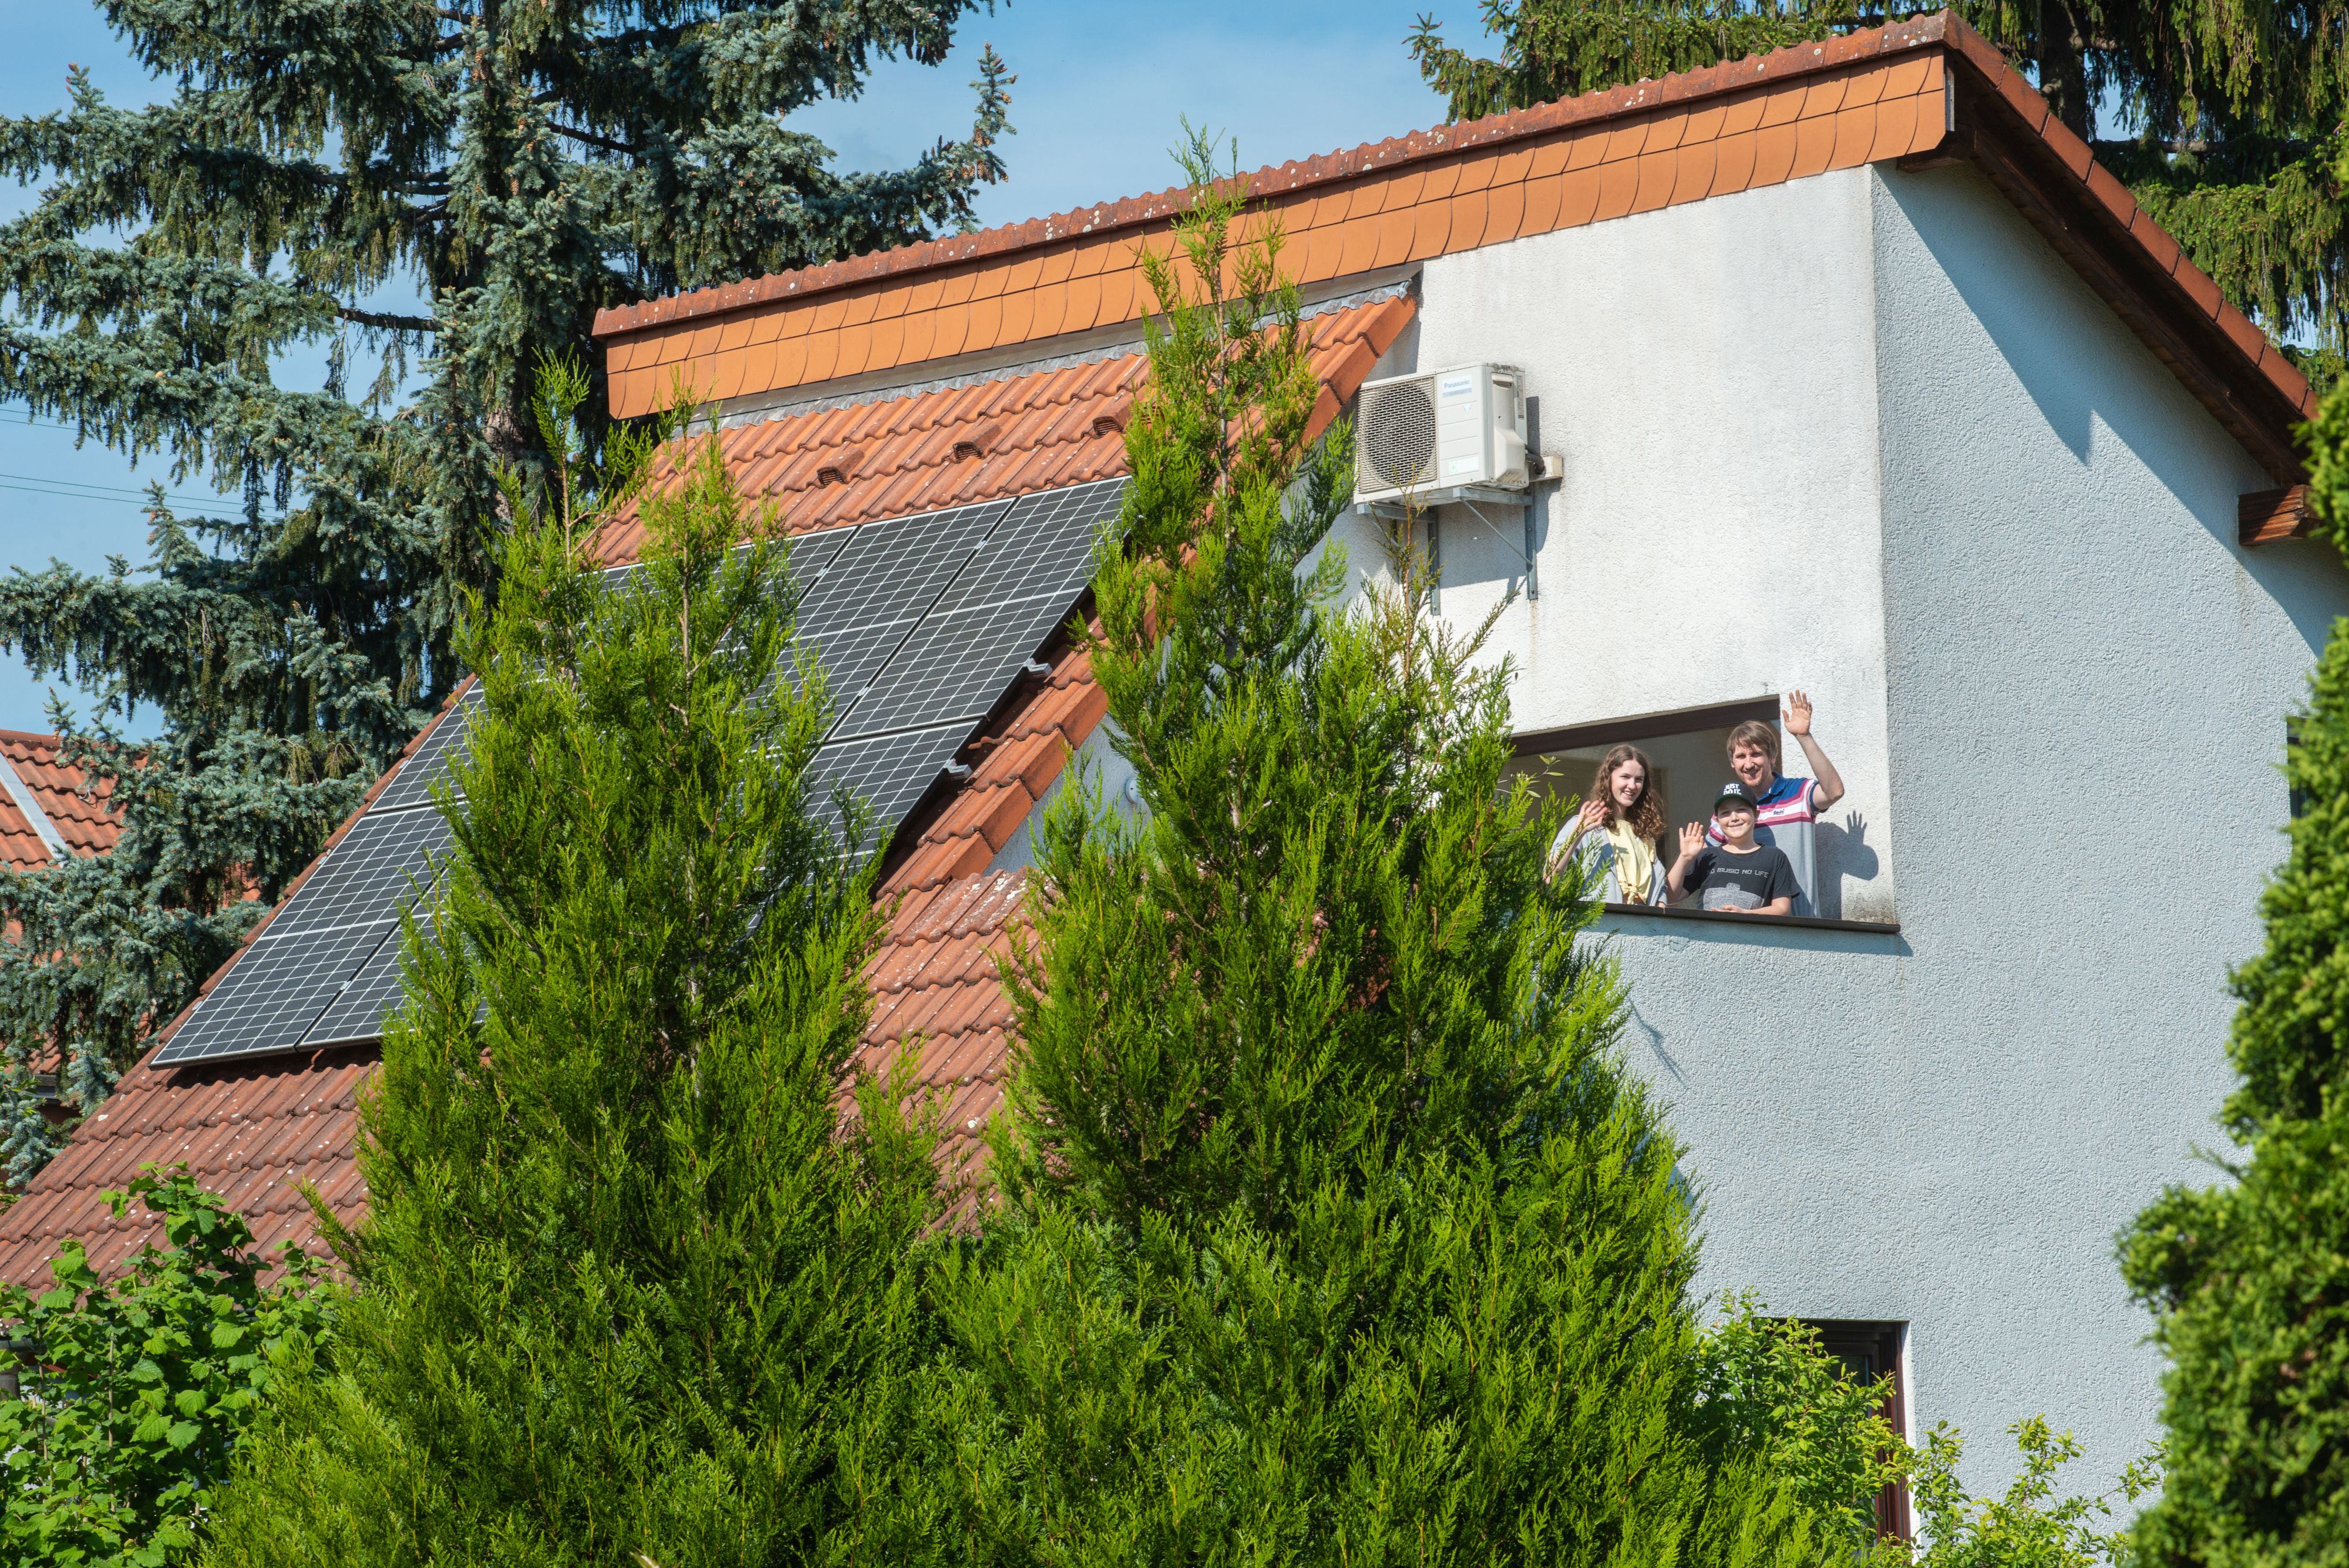 
    
            
                    PV-Anlage auf dem Einfamilienhaus erzeugt fast die doppelte Menge des verbrauchten Stroms der fünfköpfigen Familie aus Heidelberg
                
        
